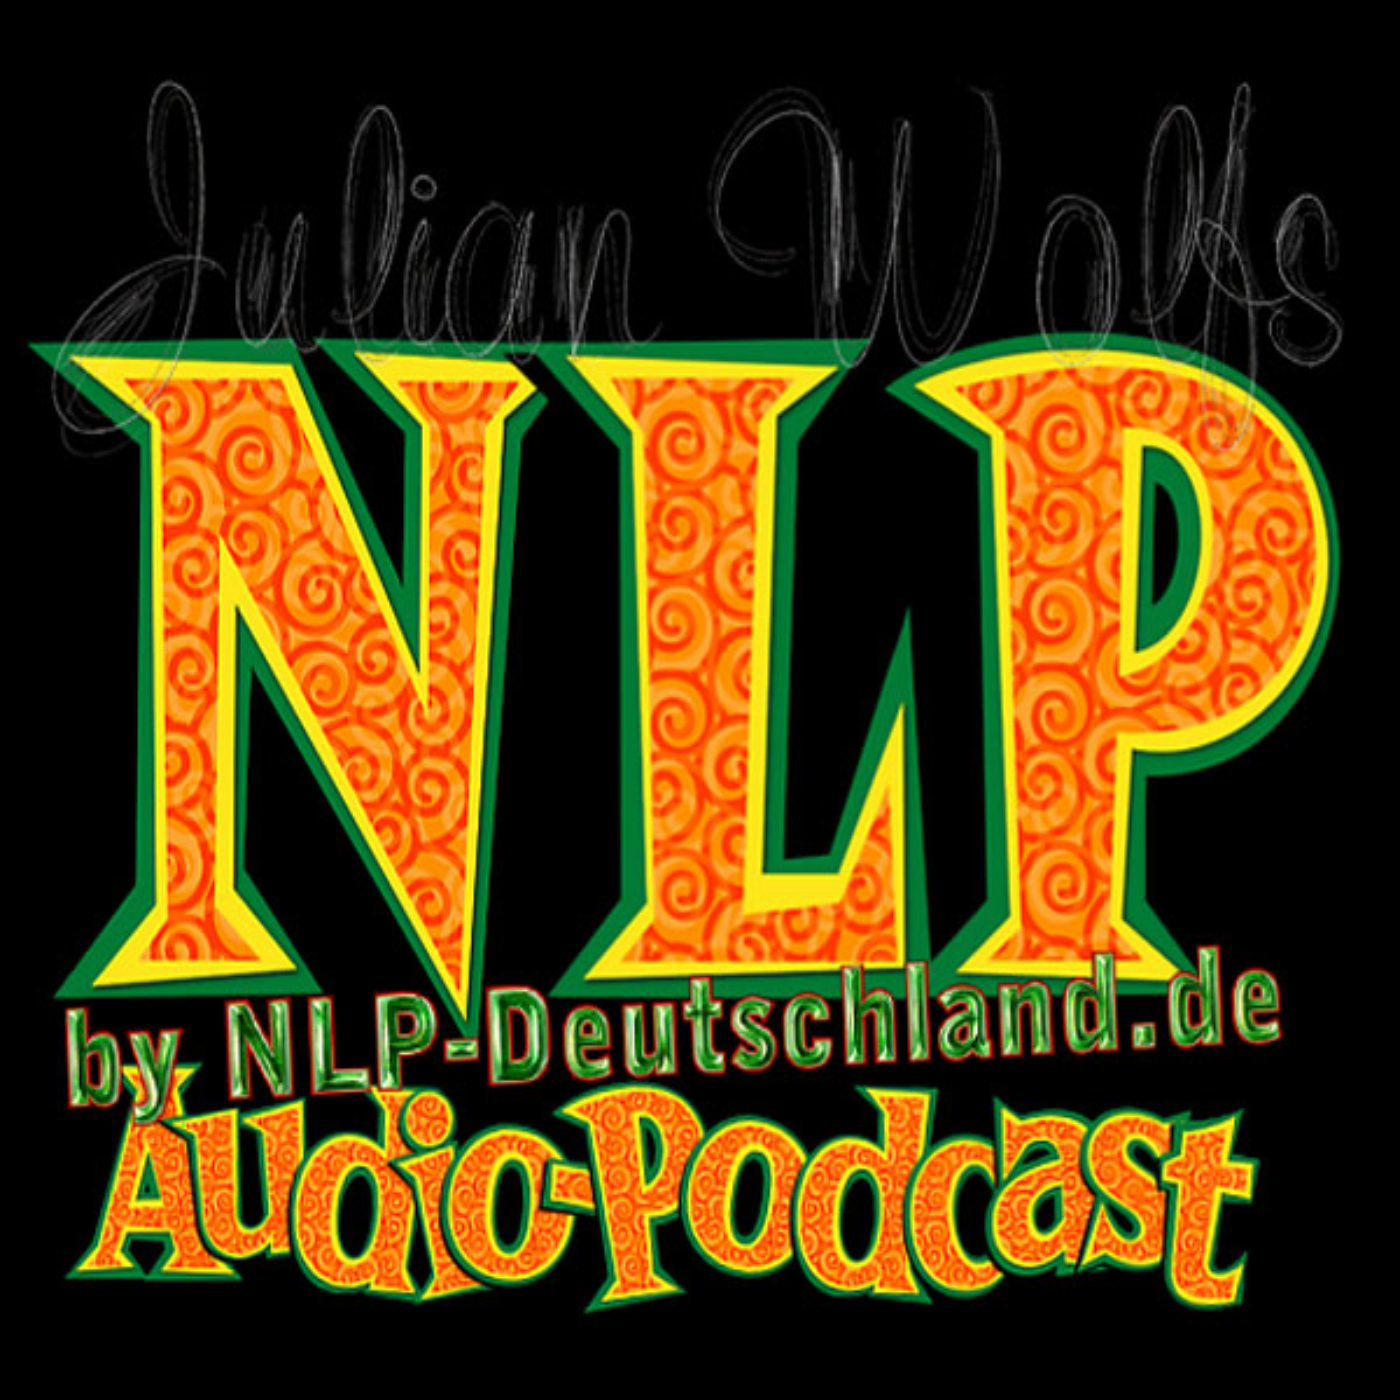 NLP-Deutschland.de - Der Audio-Podcast